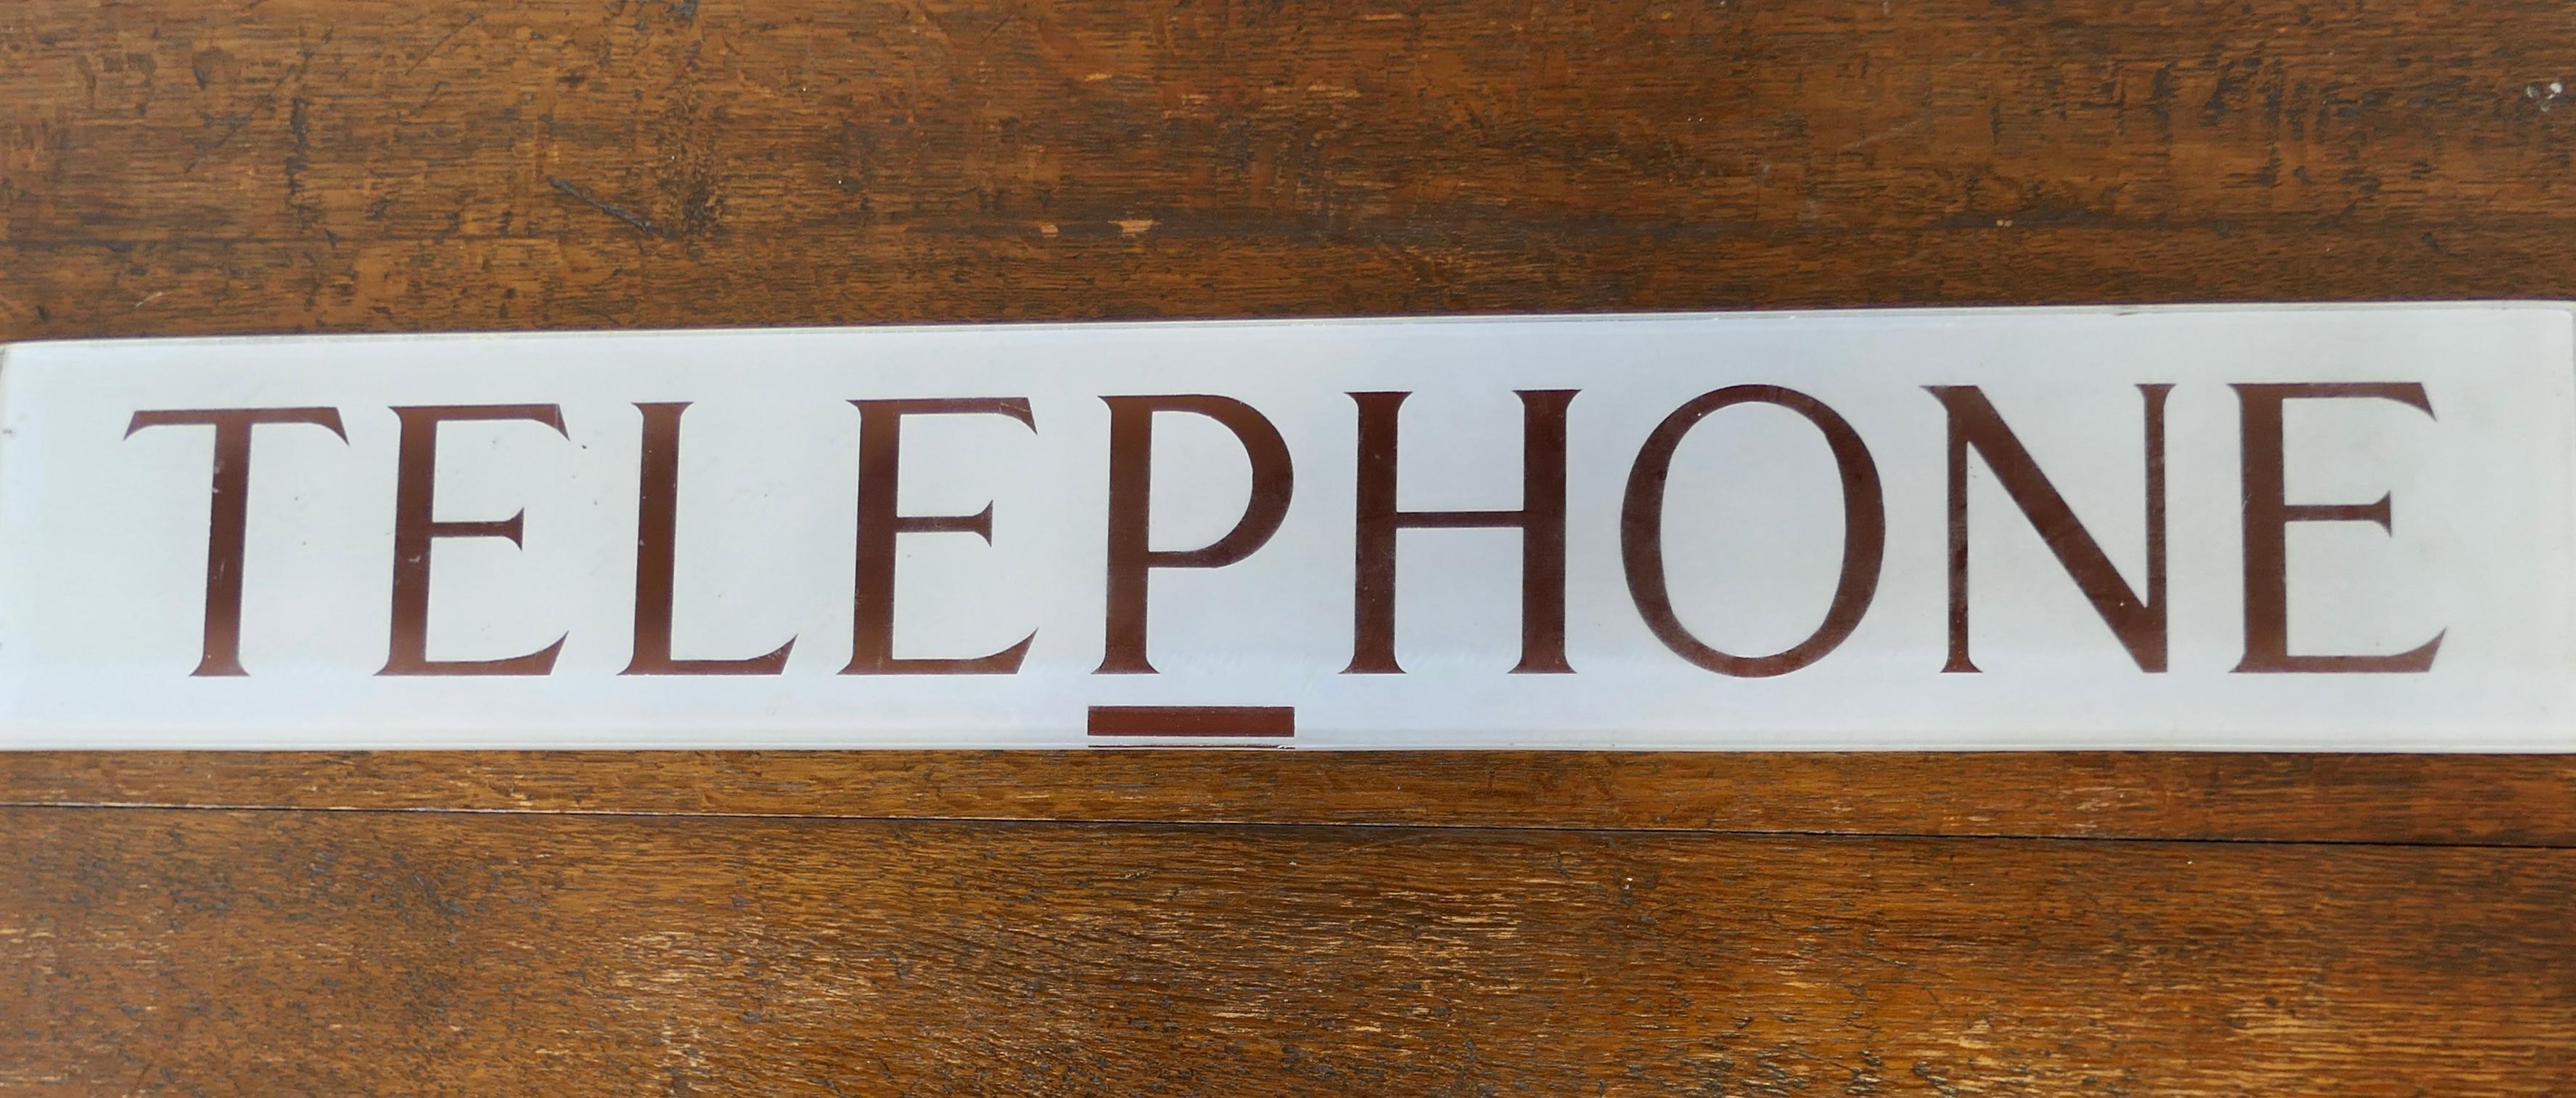 Original GPO Glas TELEPHONE Schild aus einer roten Telefonzelle

Das Telefonschild aus dickem Glas aus den 1950er Jahren ist in gutem Originalzustand.

Das Schild ist 4